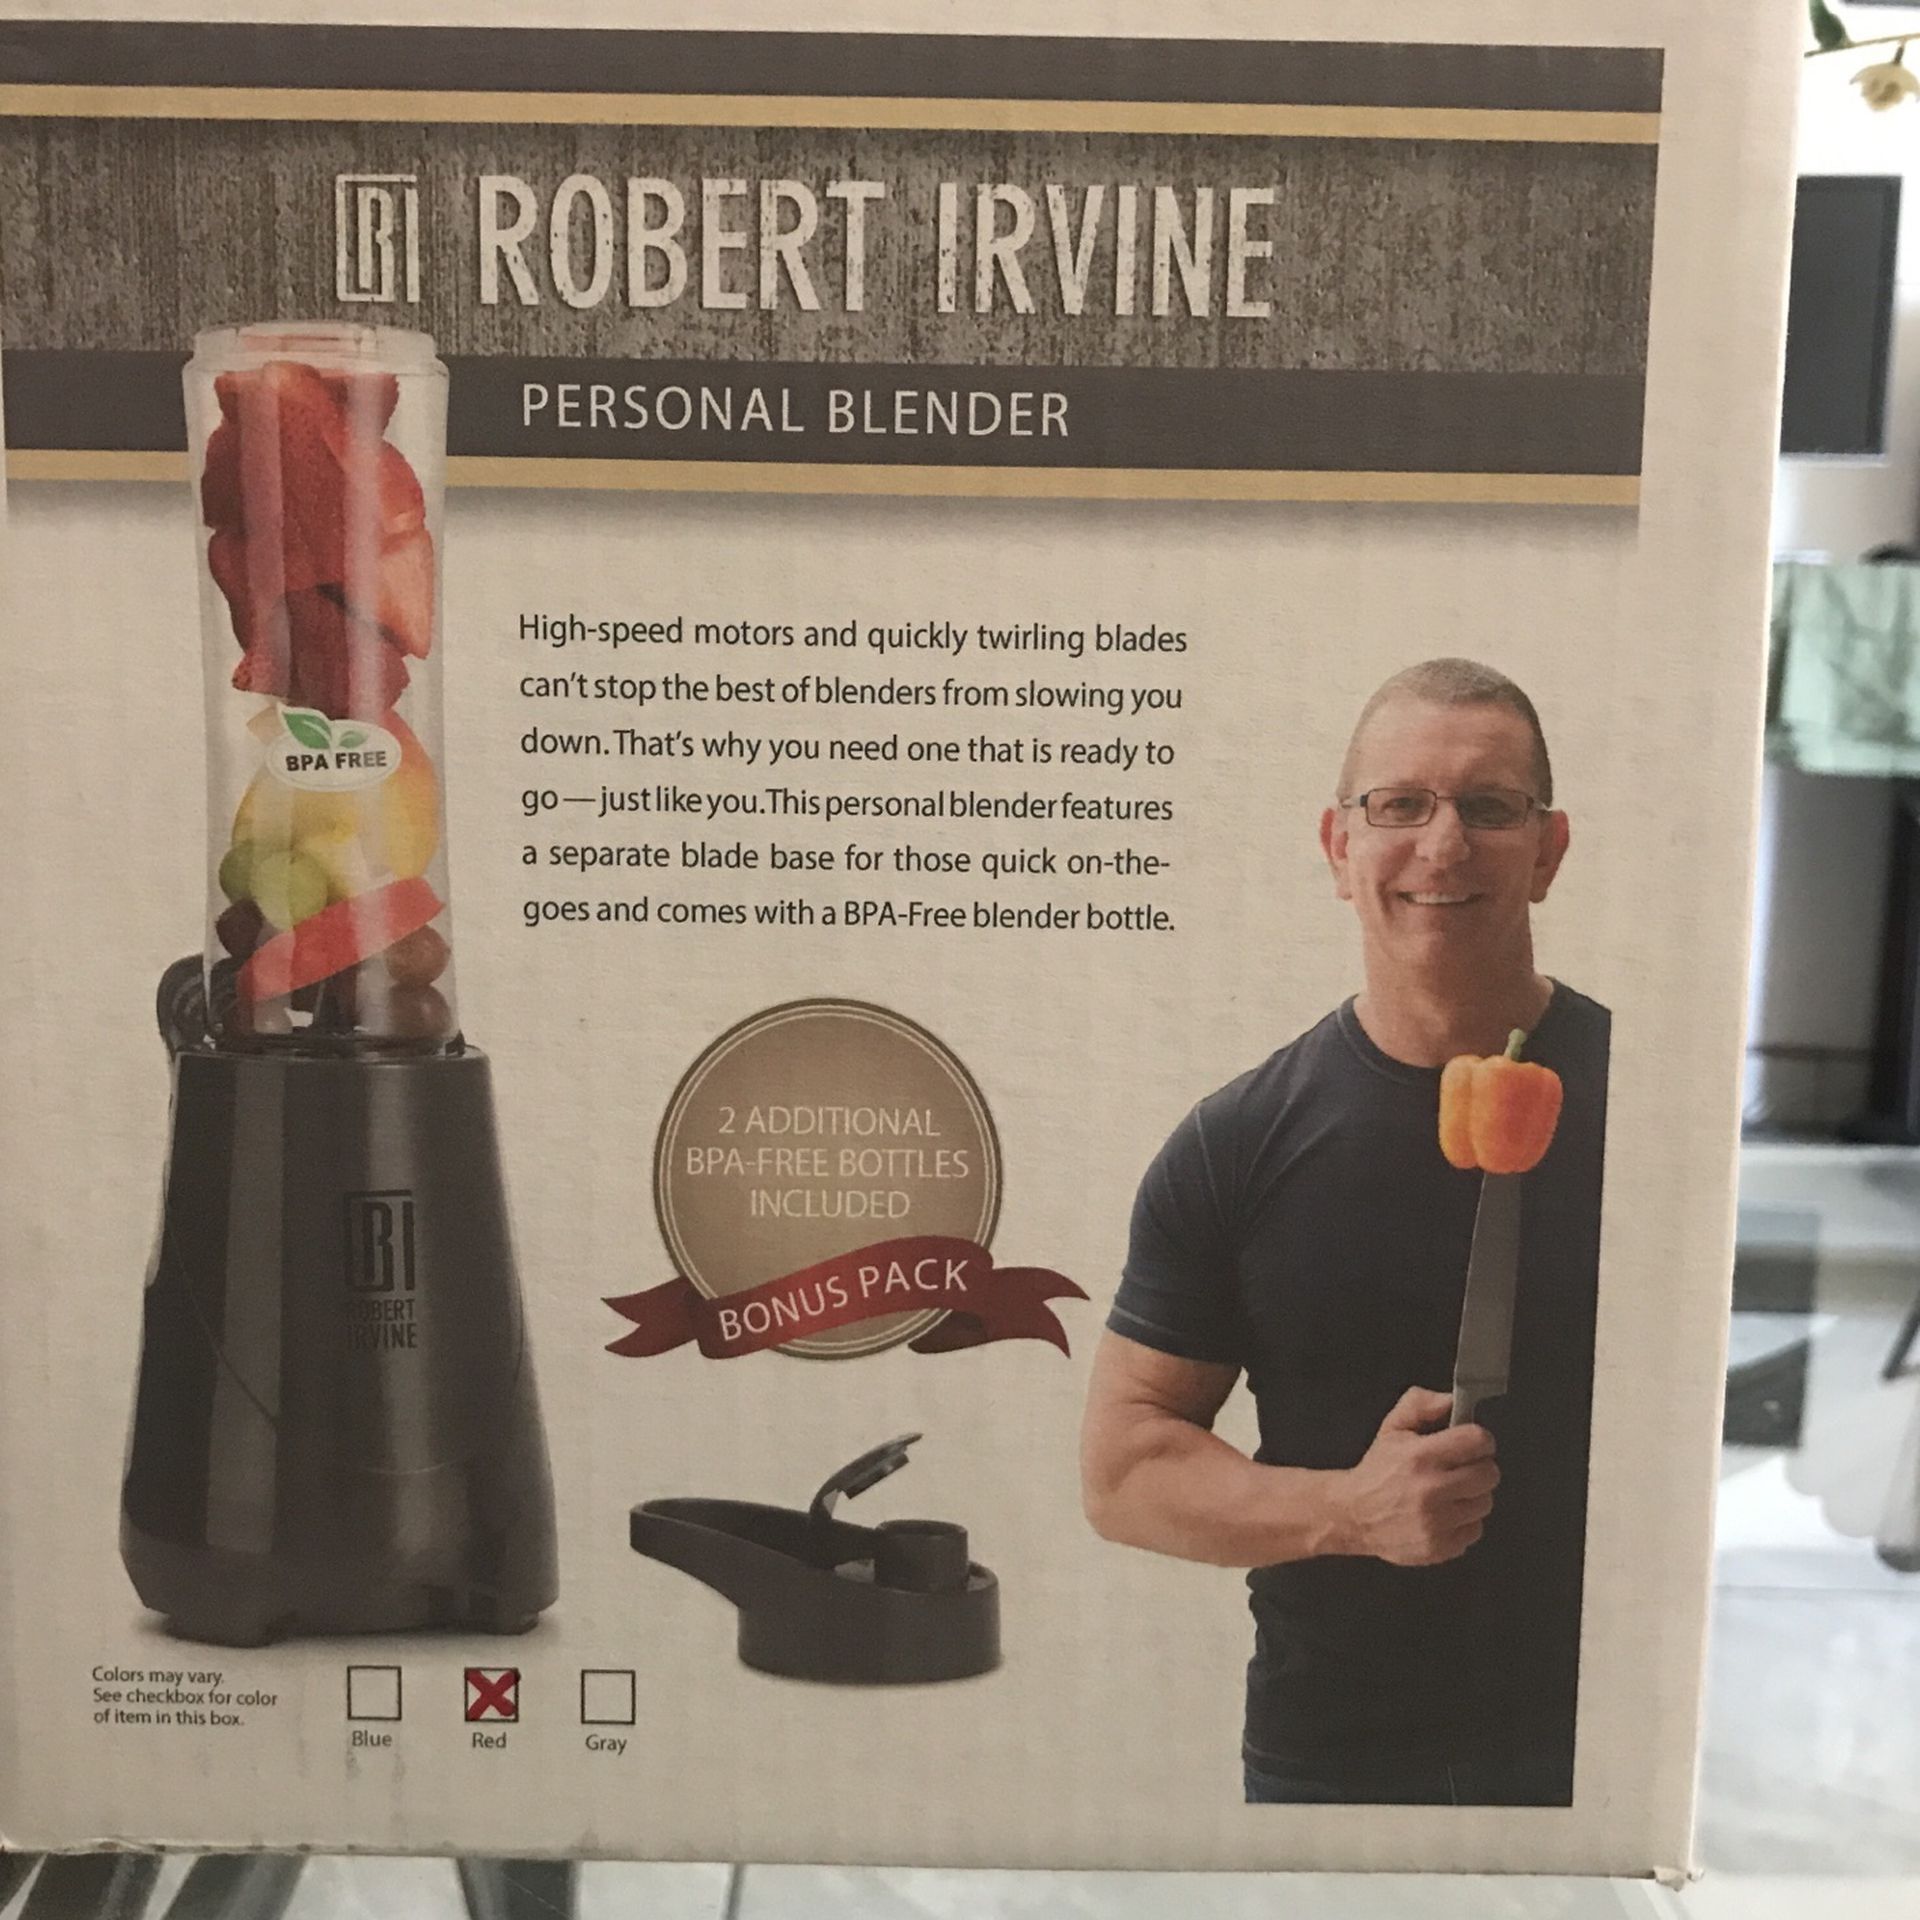 ROBERT IRVINE PERSONAL BLENDER